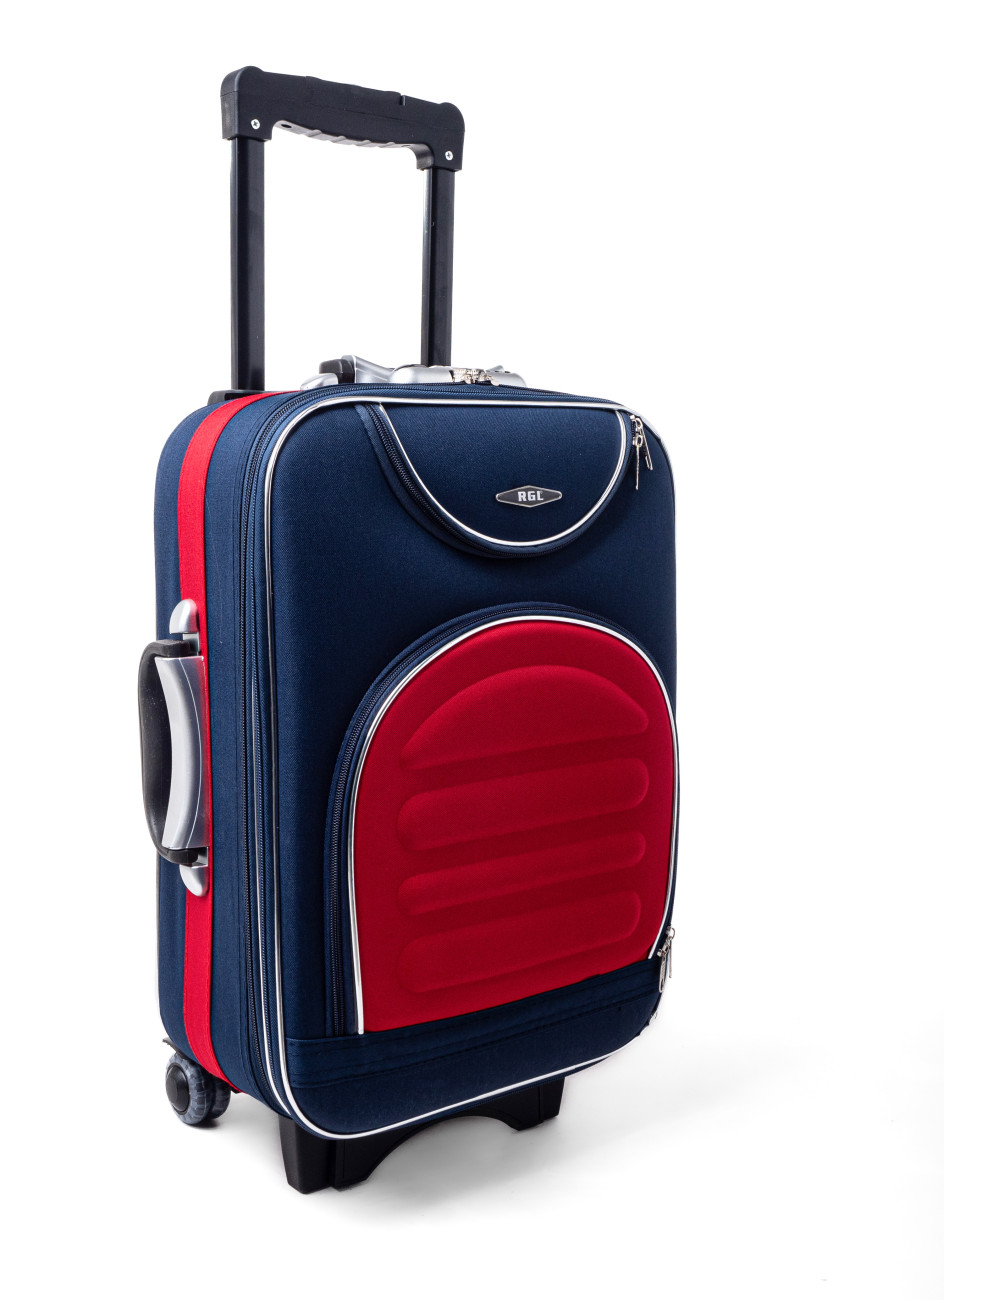 Mała walizka podróżna na kółkach  801 L RGL -  granatowo-czerwony